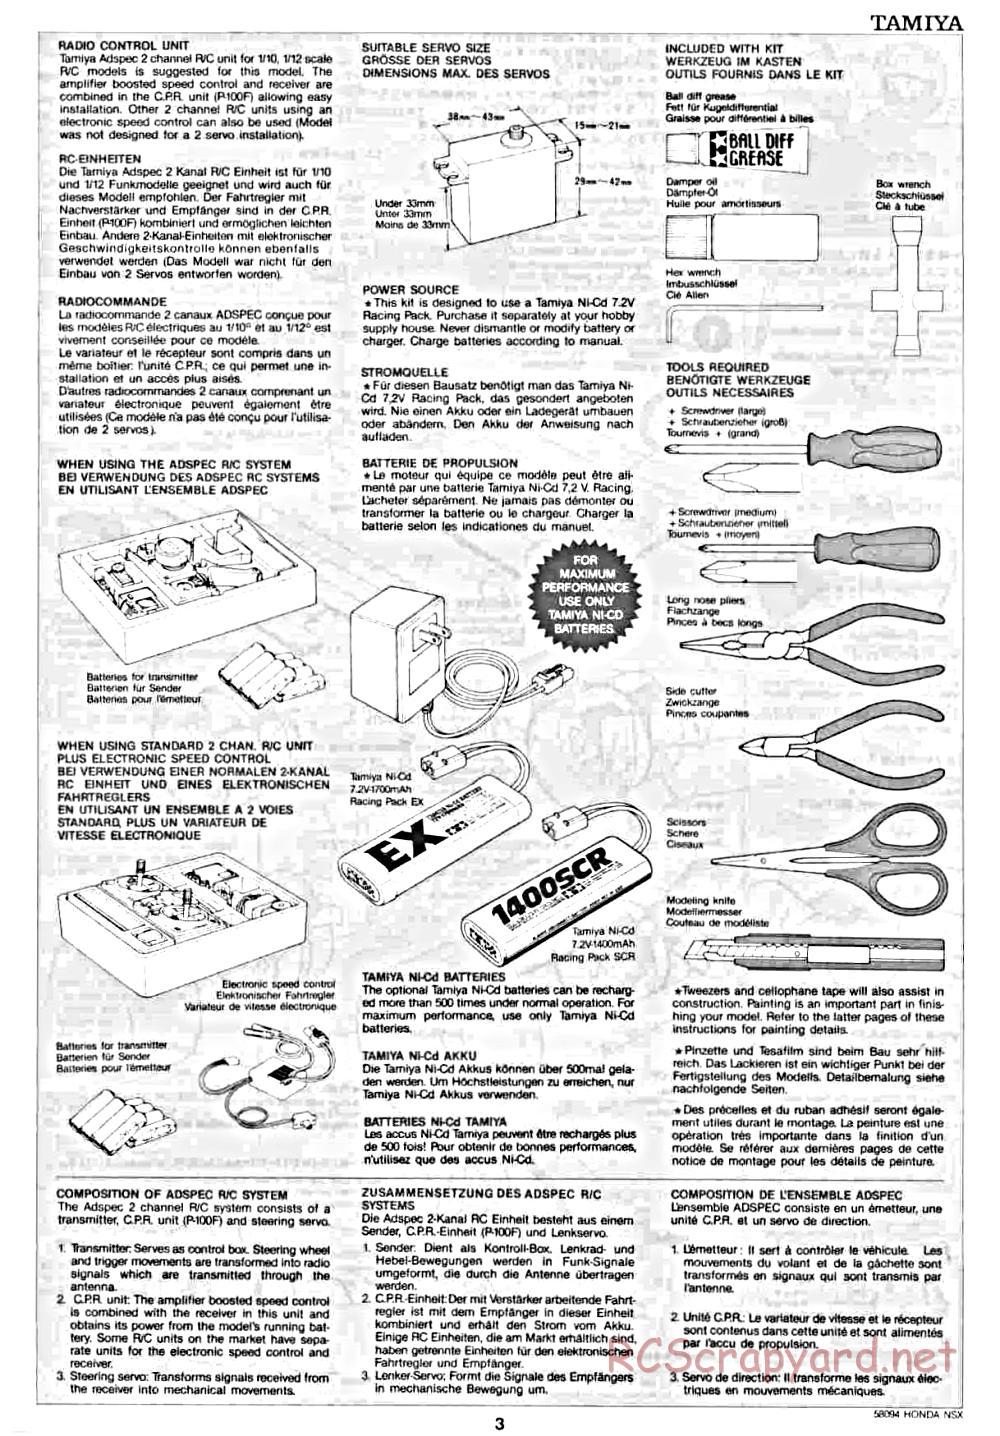 Tamiya - Honda NSX - 58094 - Manual - Page 3